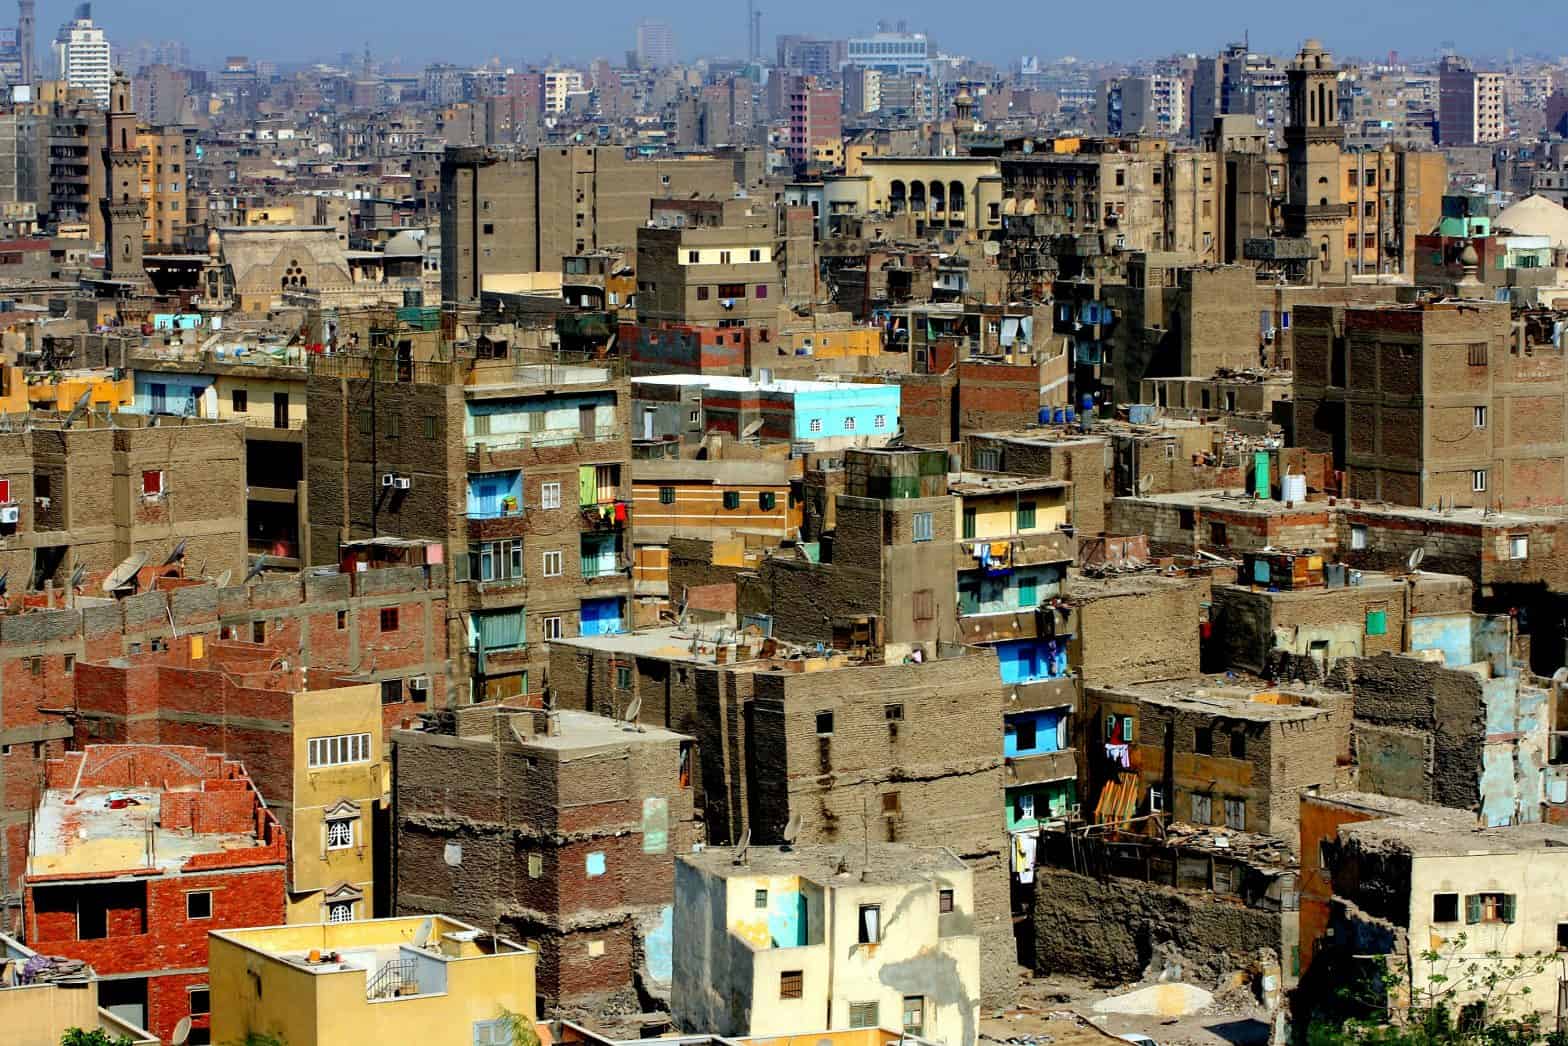 cairo informal settlements